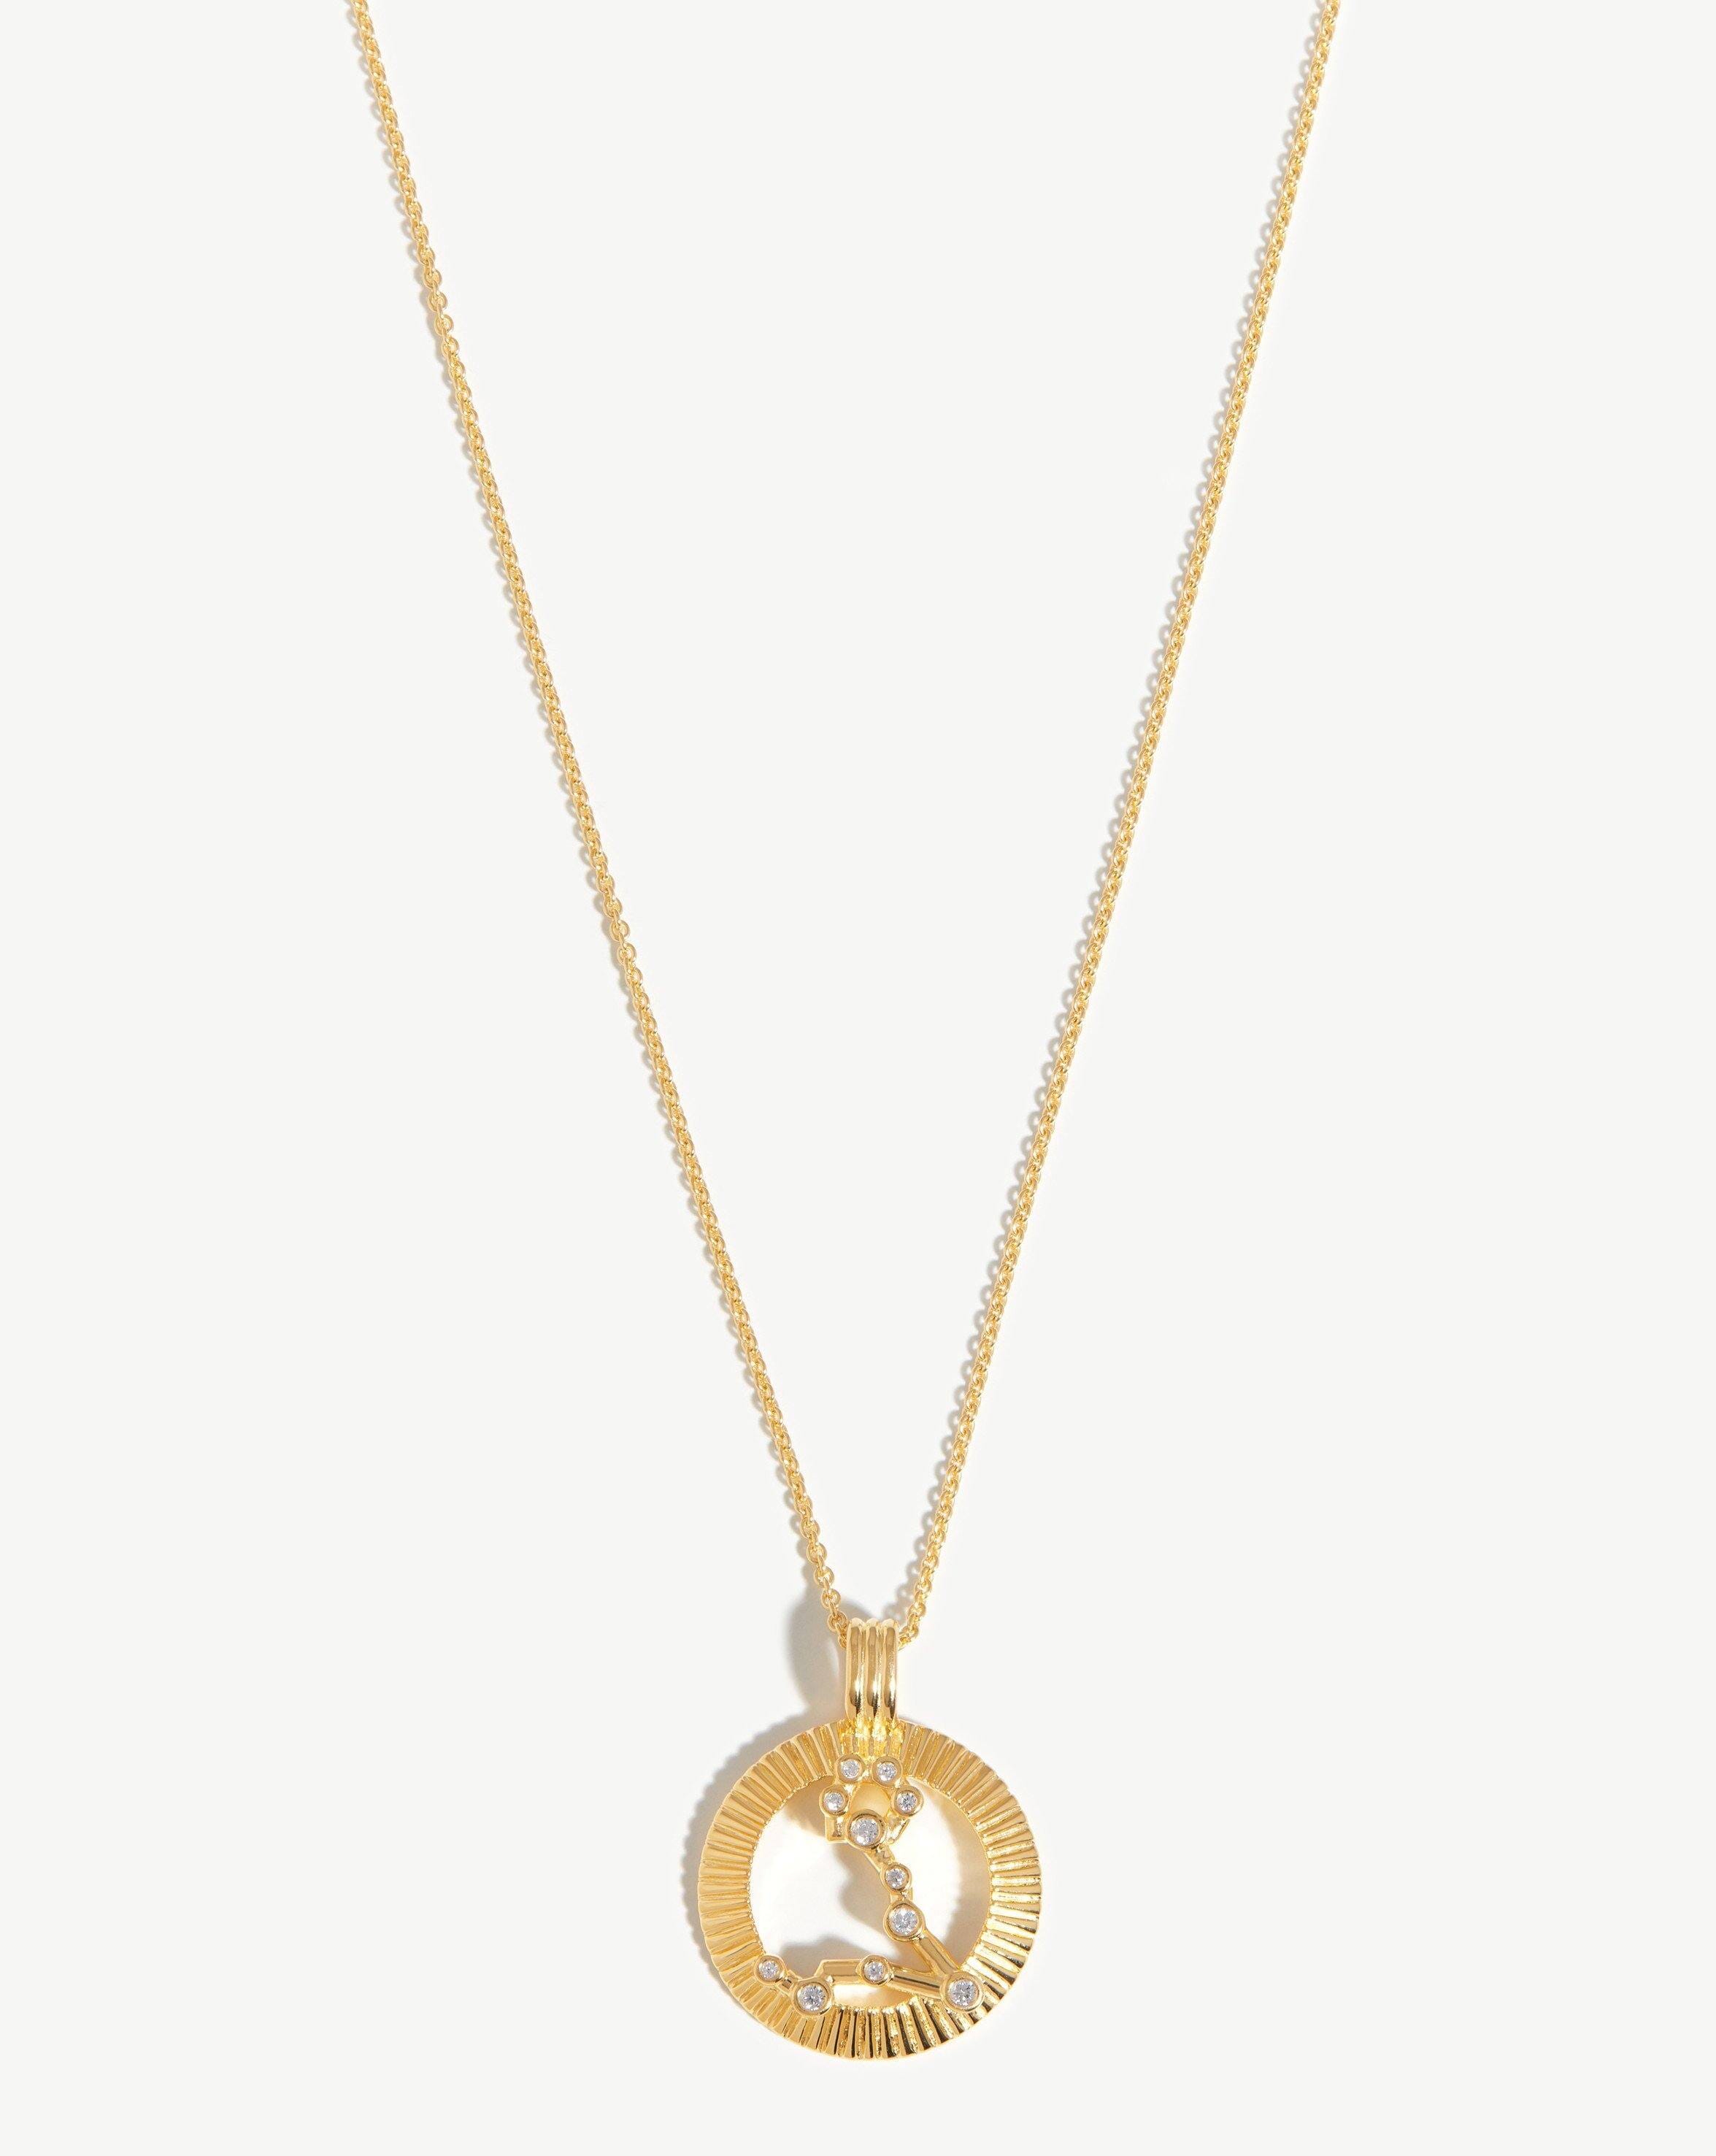 Zodiac Constellation Pendant Necklace - Pisces | 18ct Gold Plated Vermeil/Pisces Necklaces Missoma 